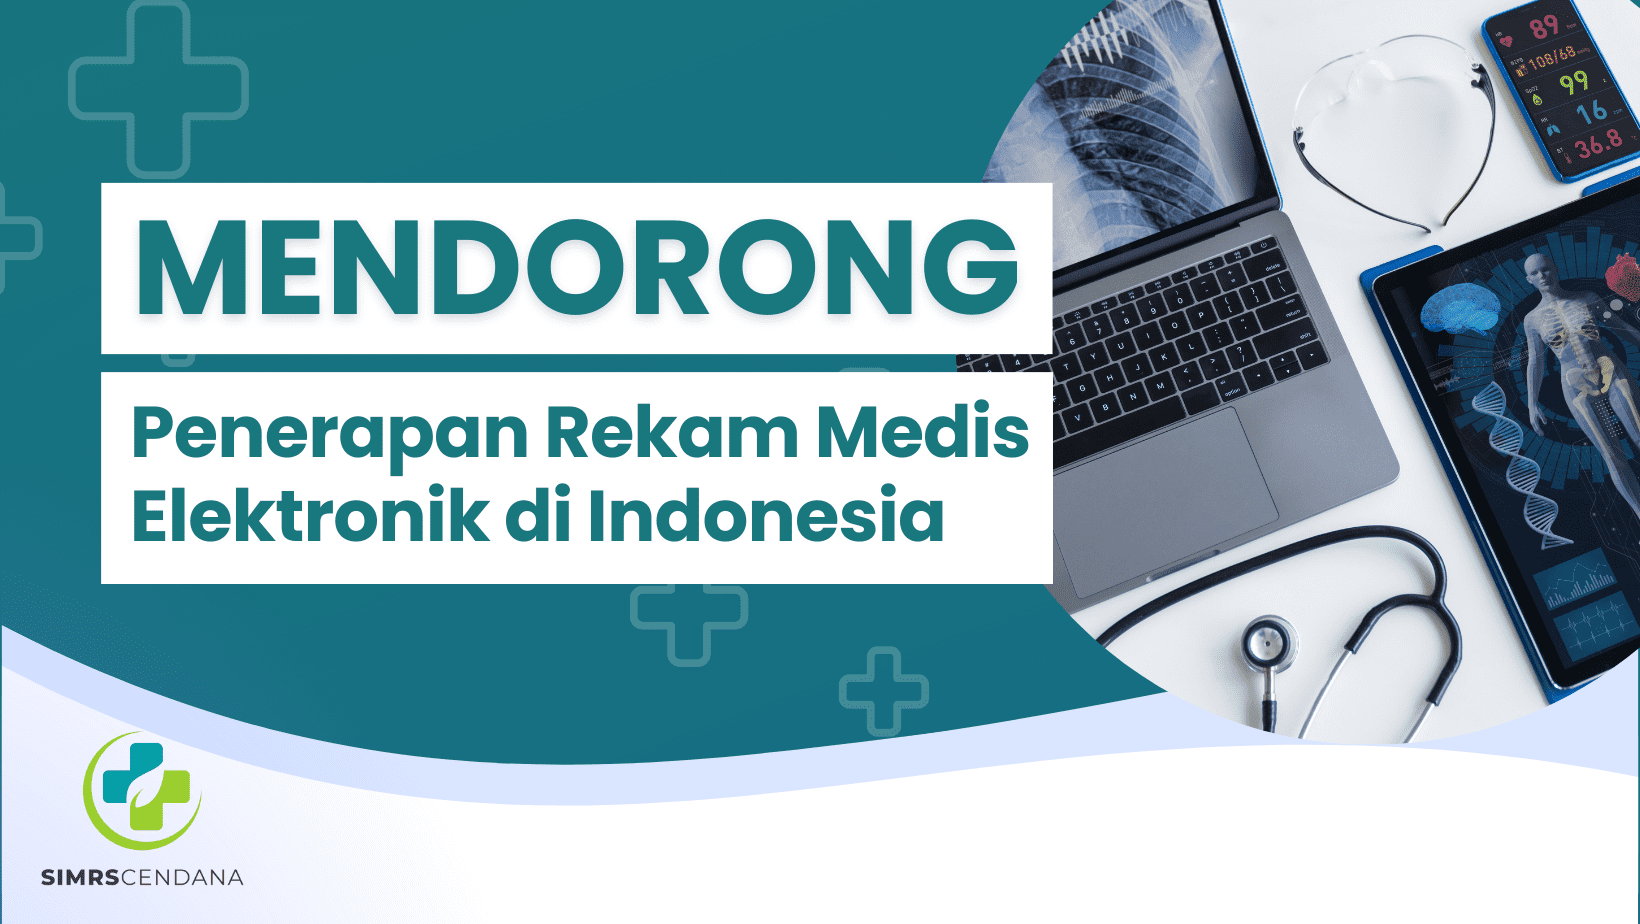 Mendorong Penerapan Rekam Medis Elektronik di Indonesia